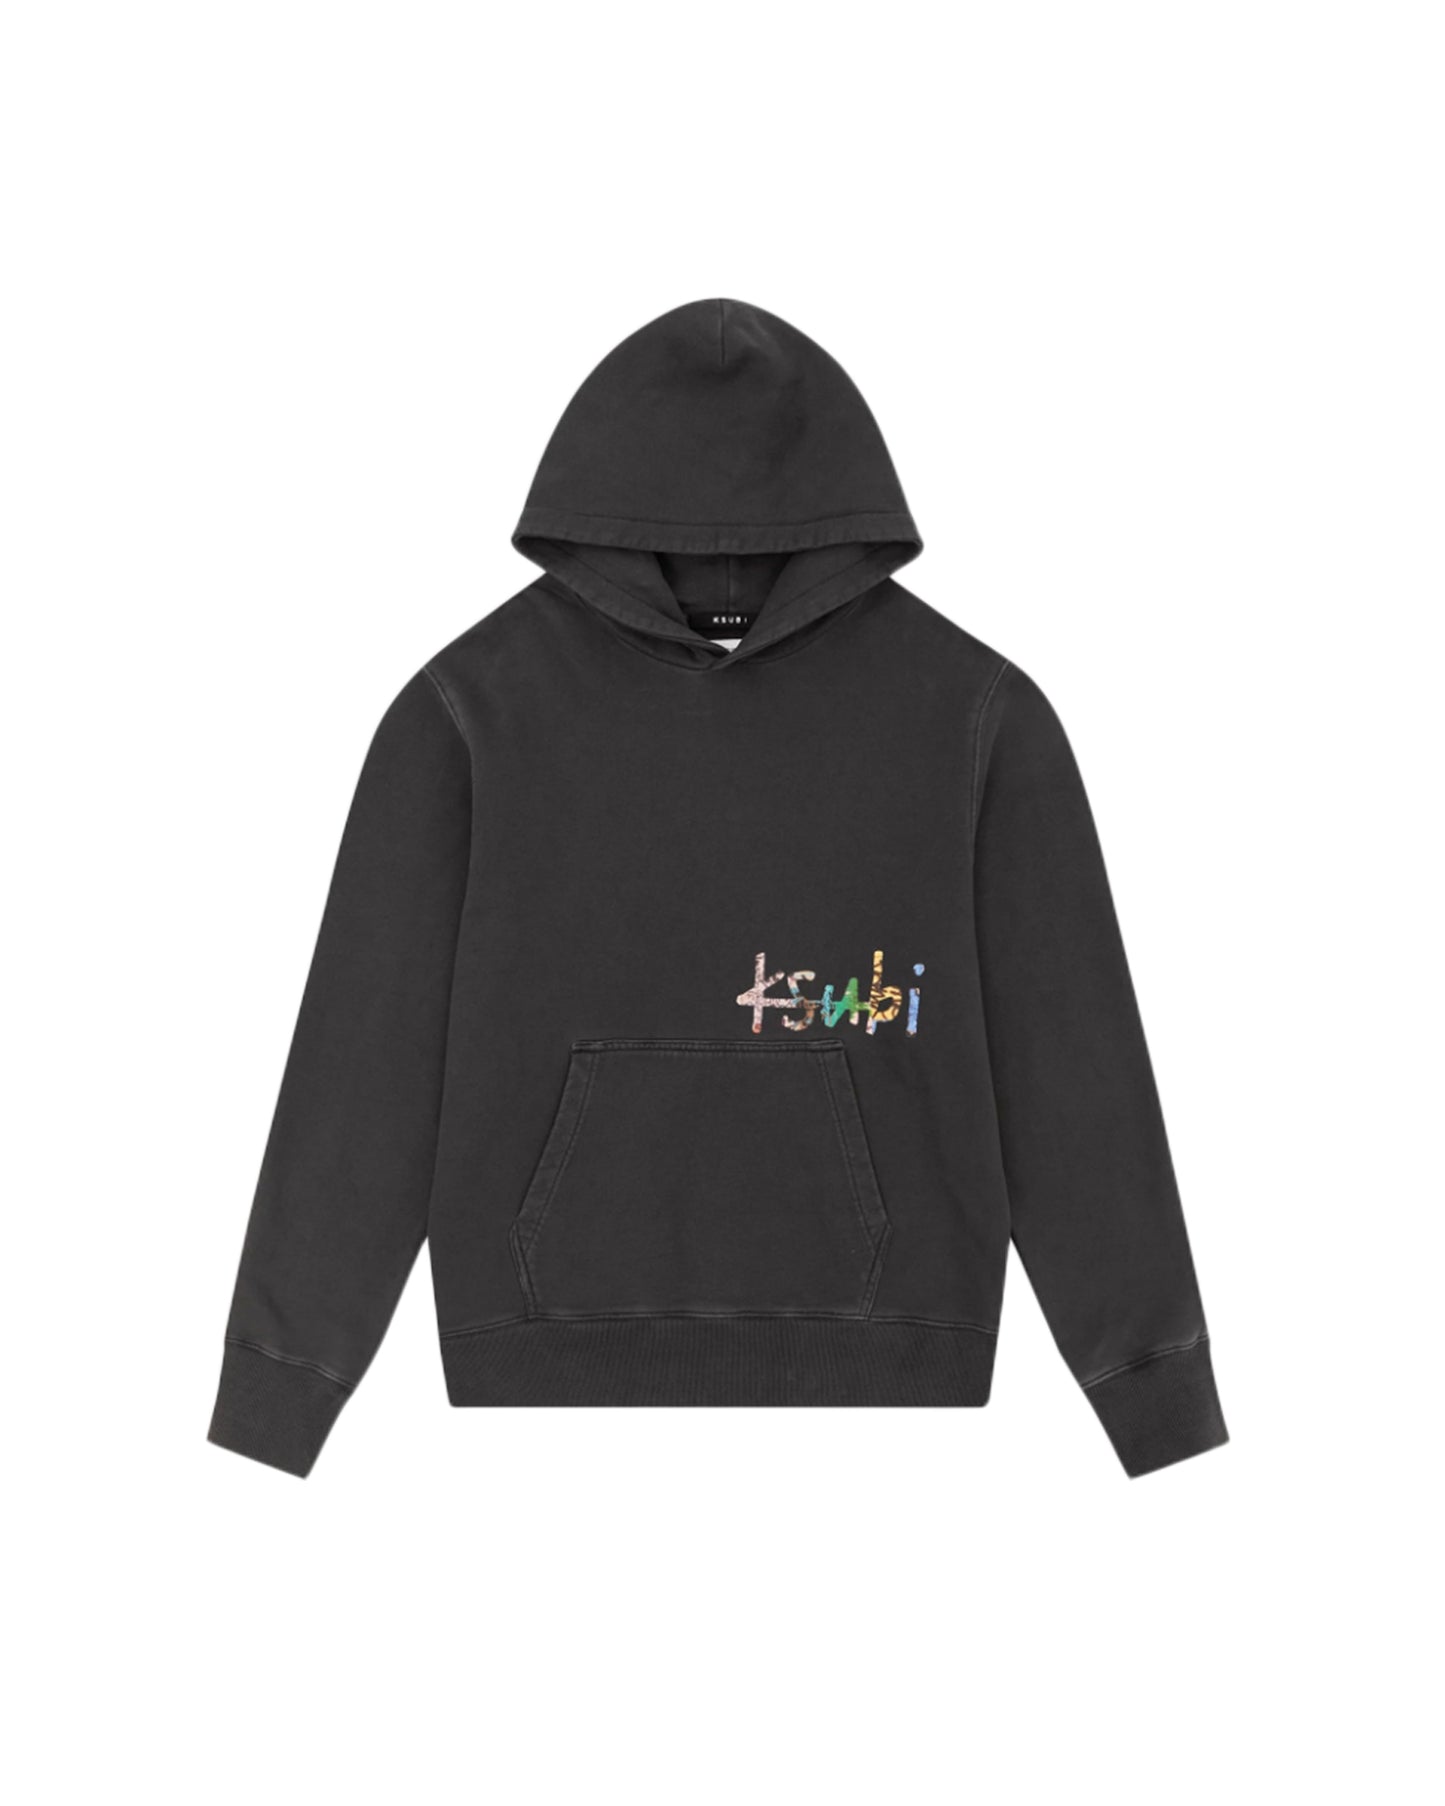 スビ/Knitted kulture kash hoodie/プルオーバーパーカー/Black